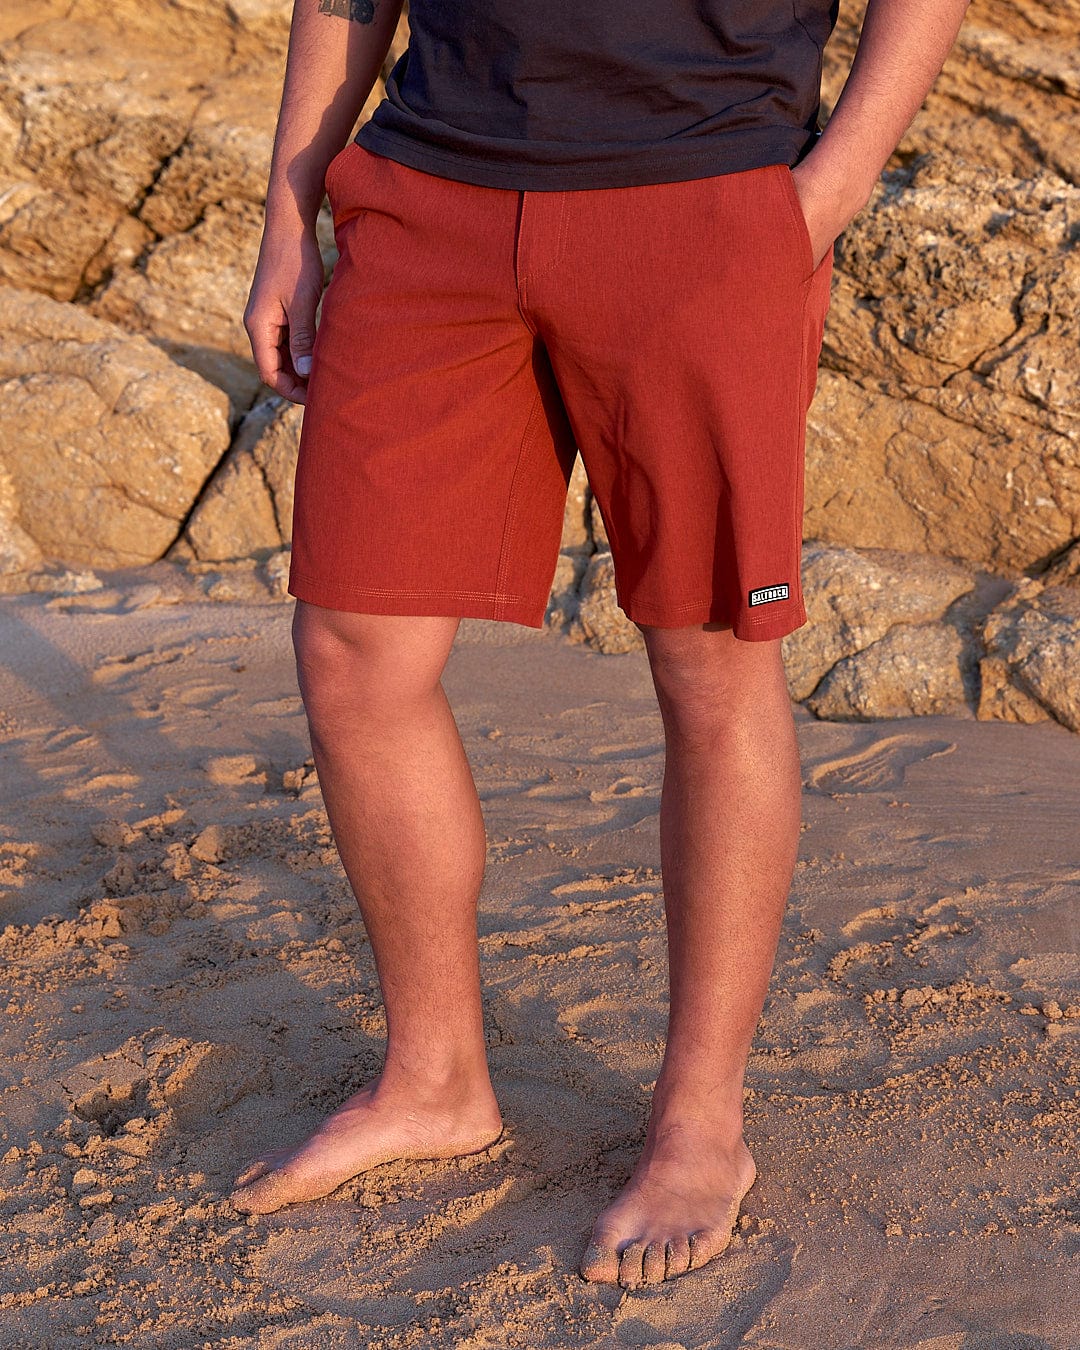 a man in Saltrock Amphibian II - Mens Boardshort - Red standing on a beach.